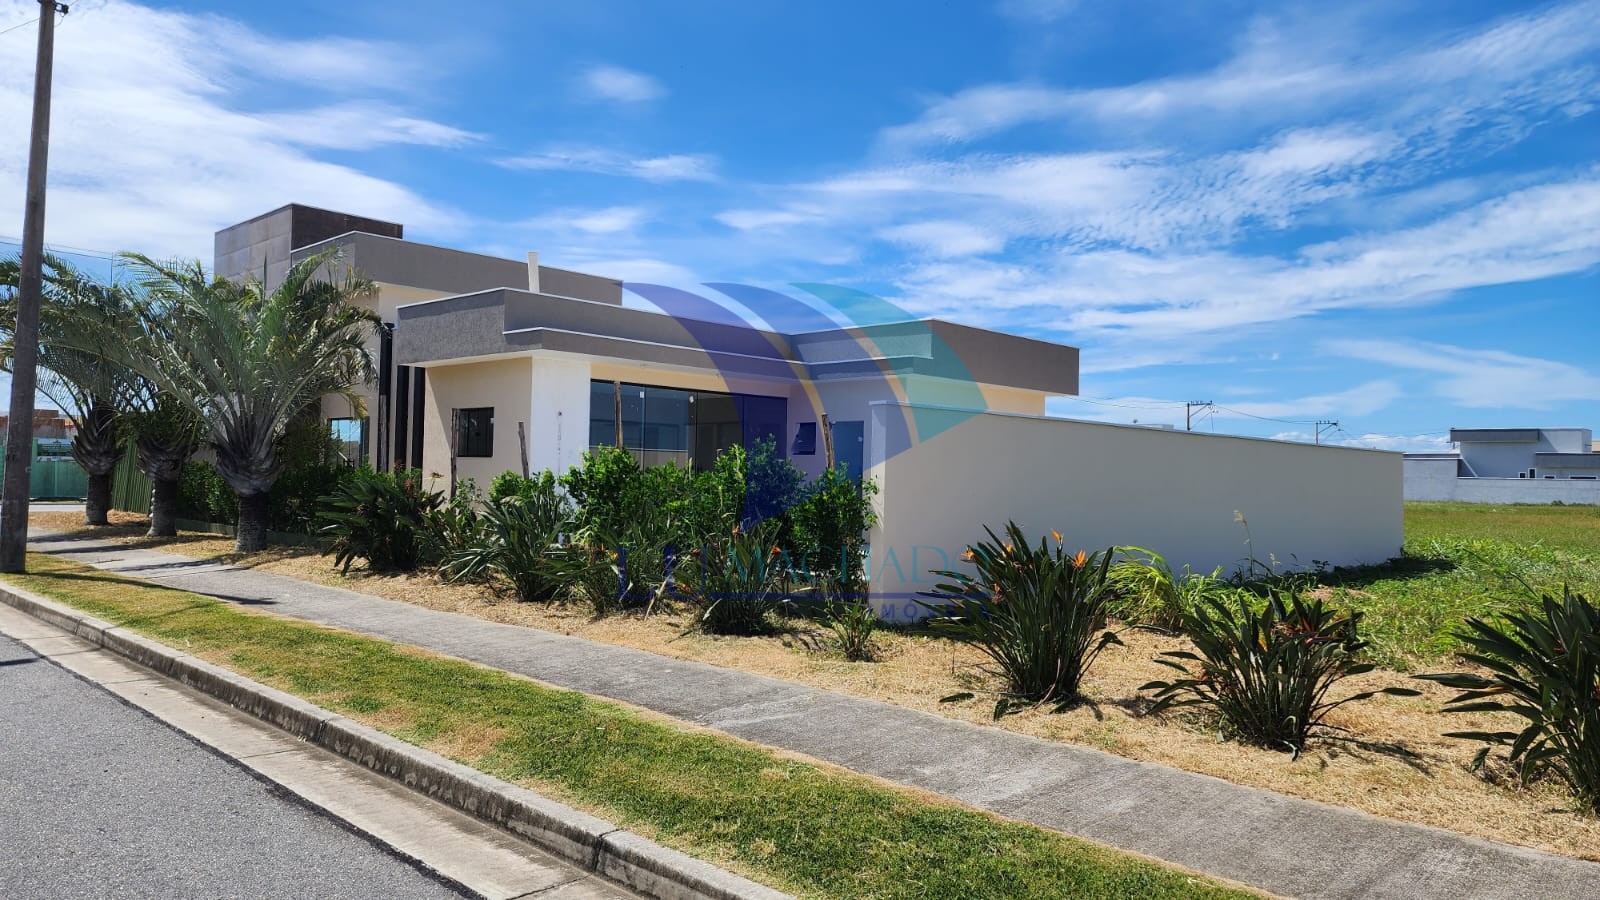 COD 343 Venda- Casa Linear Luxo com Piscina-  Condomínio Alphaville, Cabo Frio